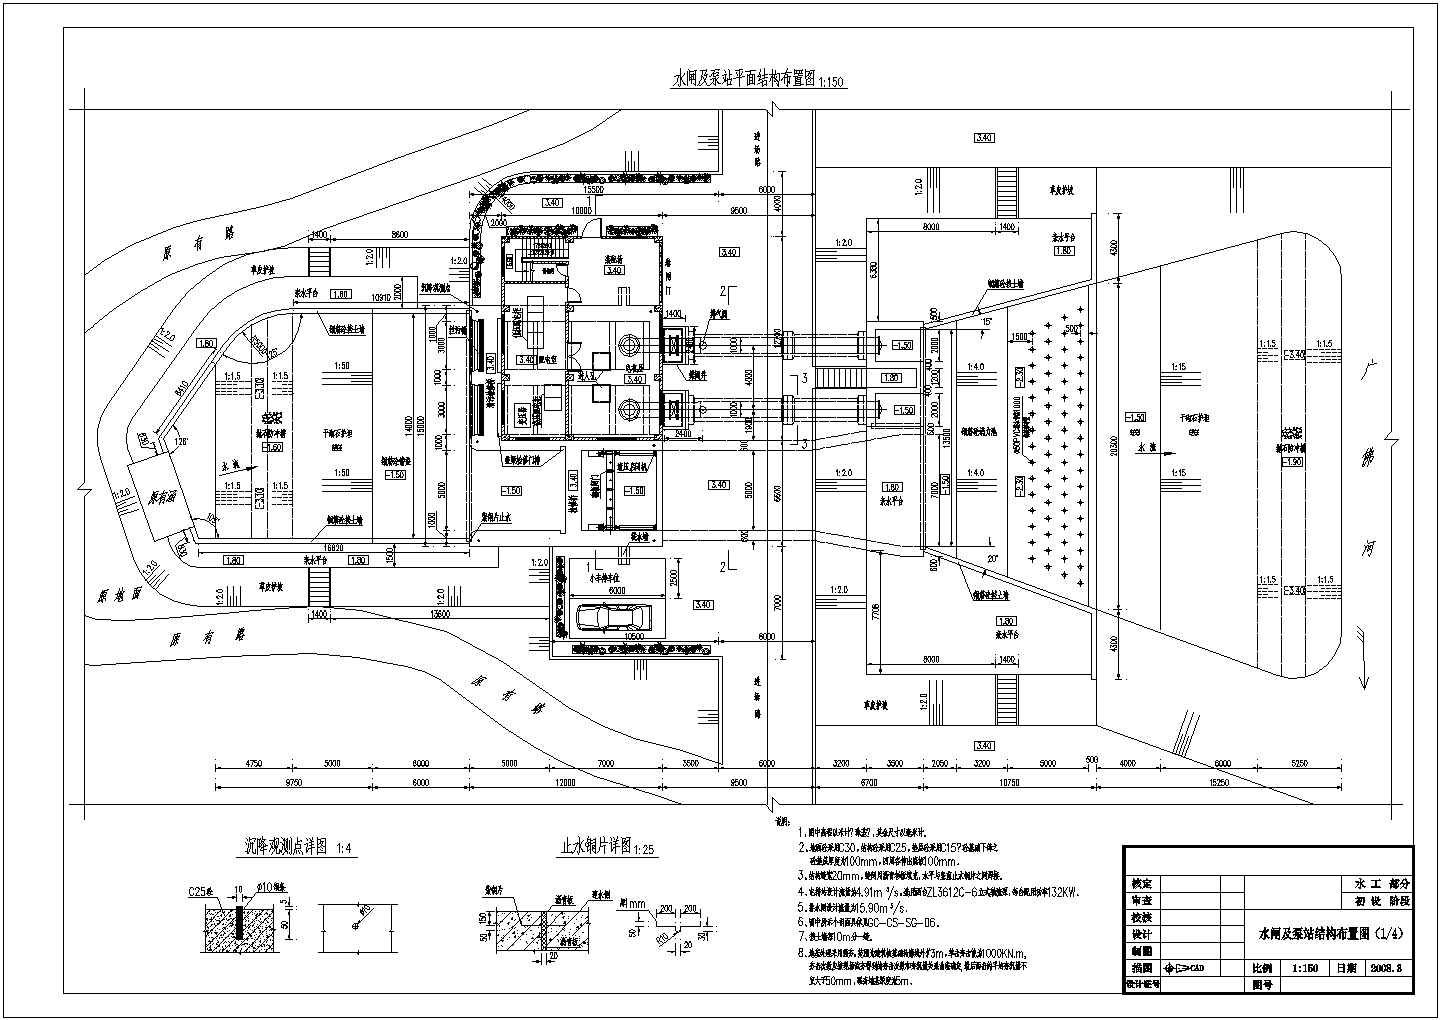 初步设计阶段水闸及泵房结构布置图